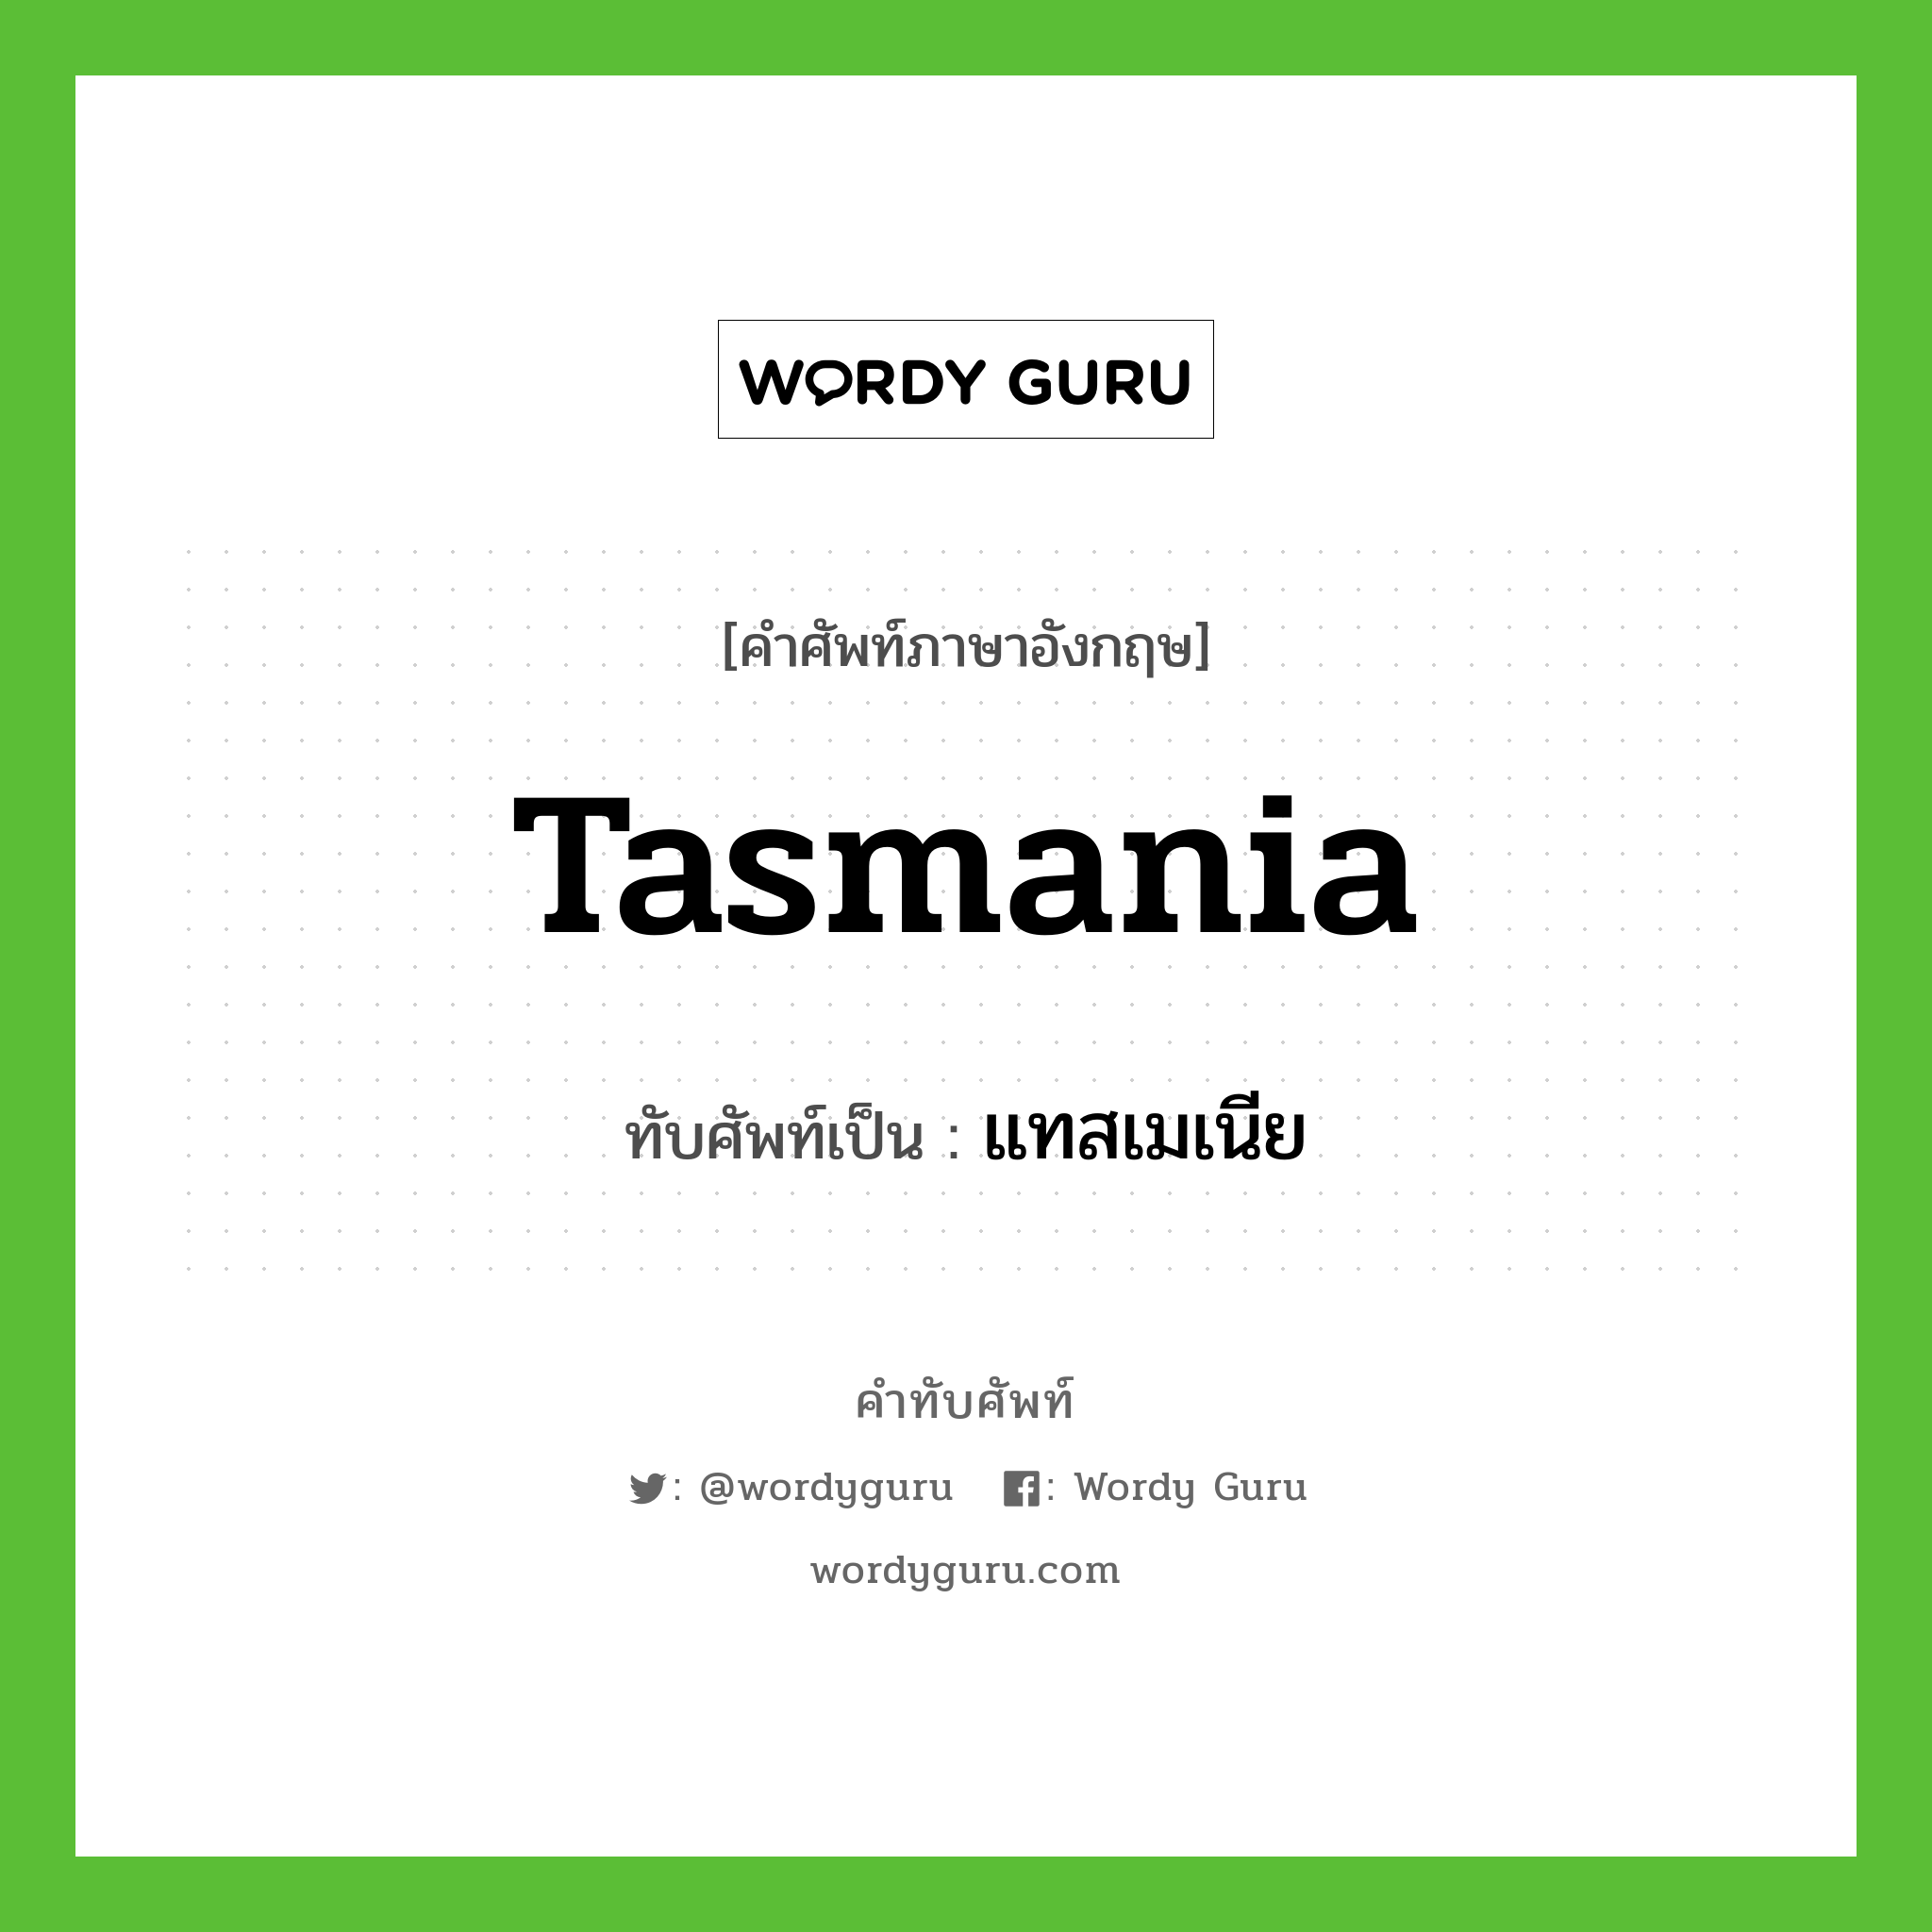 Tasmania เขียนเป็นคำไทยว่าอะไร?, คำศัพท์ภาษาอังกฤษ Tasmania ทับศัพท์เป็น แทสเมเนีย